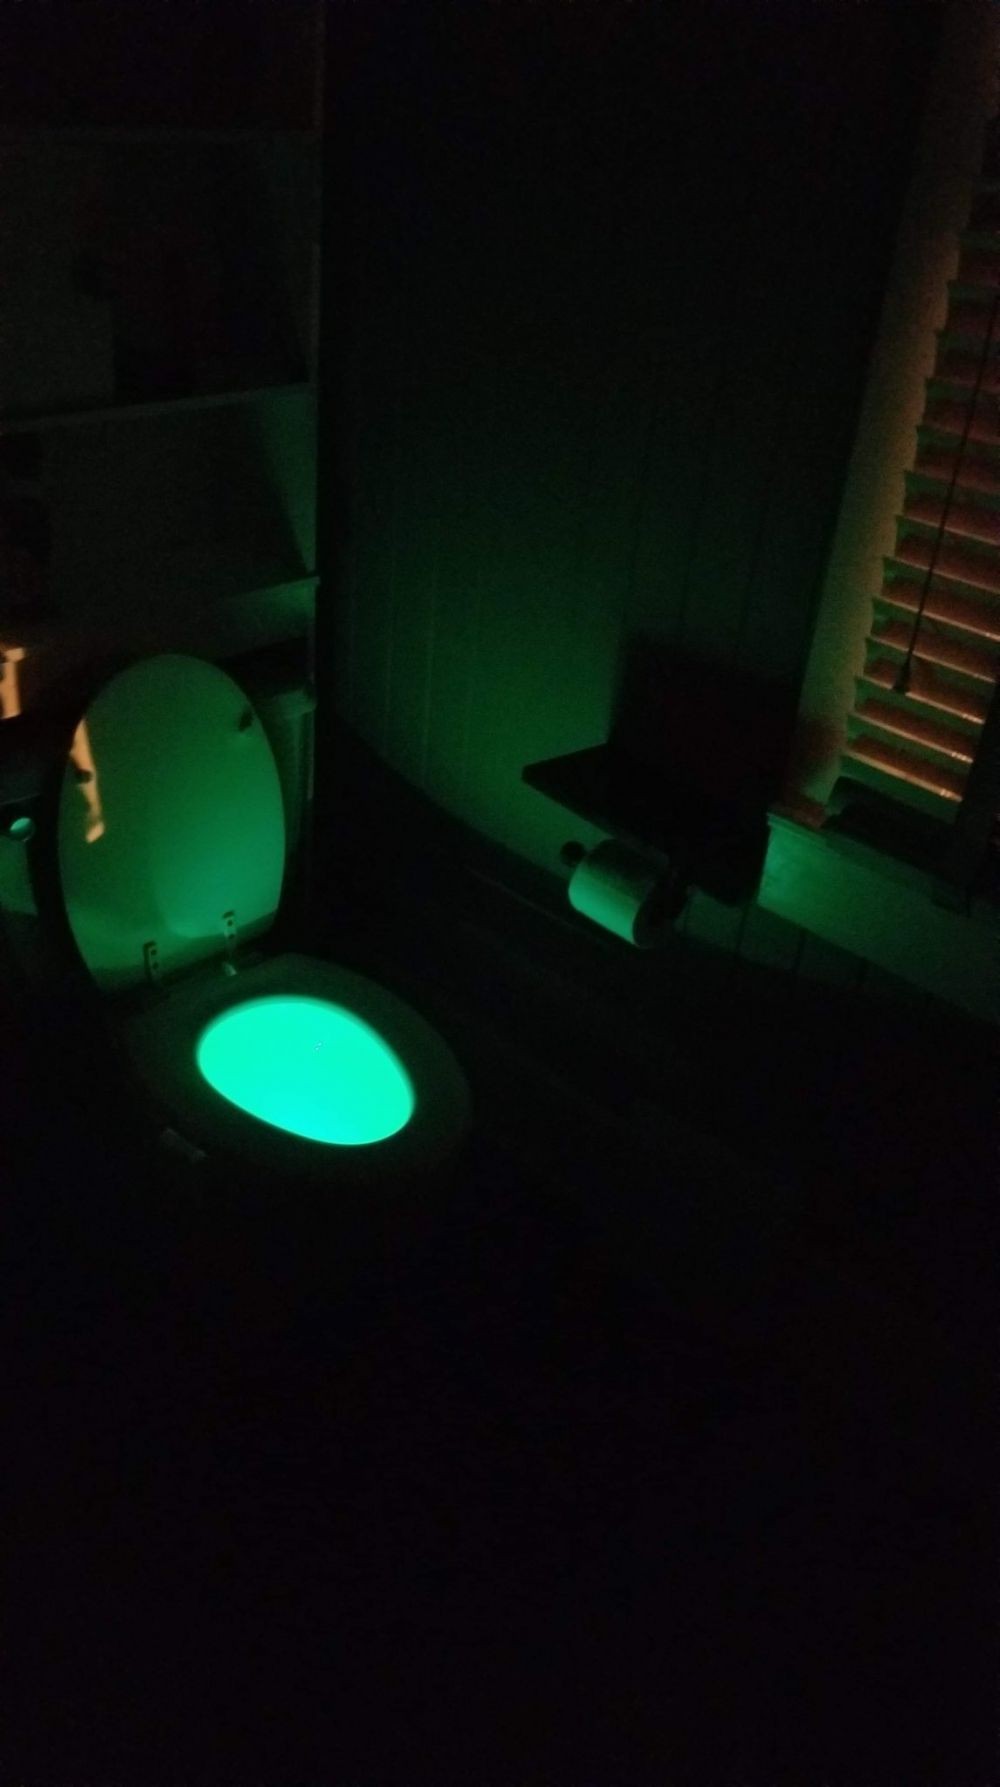 10 Desain toilet duduk nyeleneh ini bikin nggak jadi kebelet